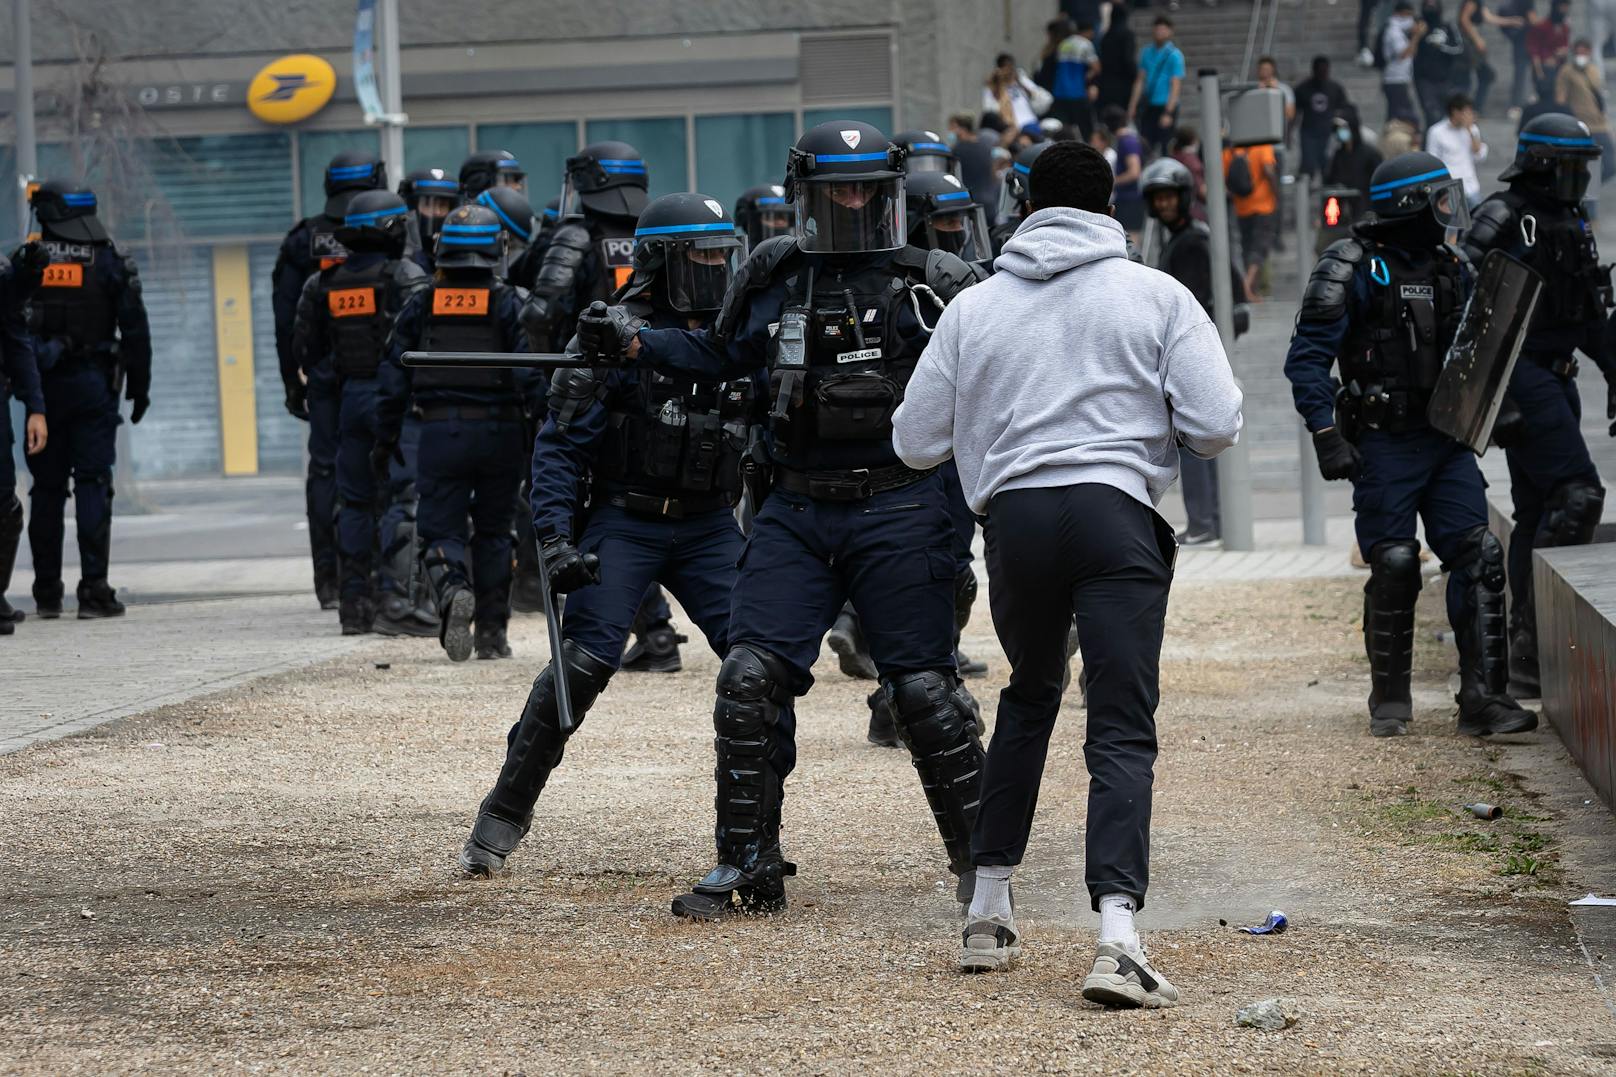 Krawalle in Frankreich– "Polizisten wie Hunde geschlagen"